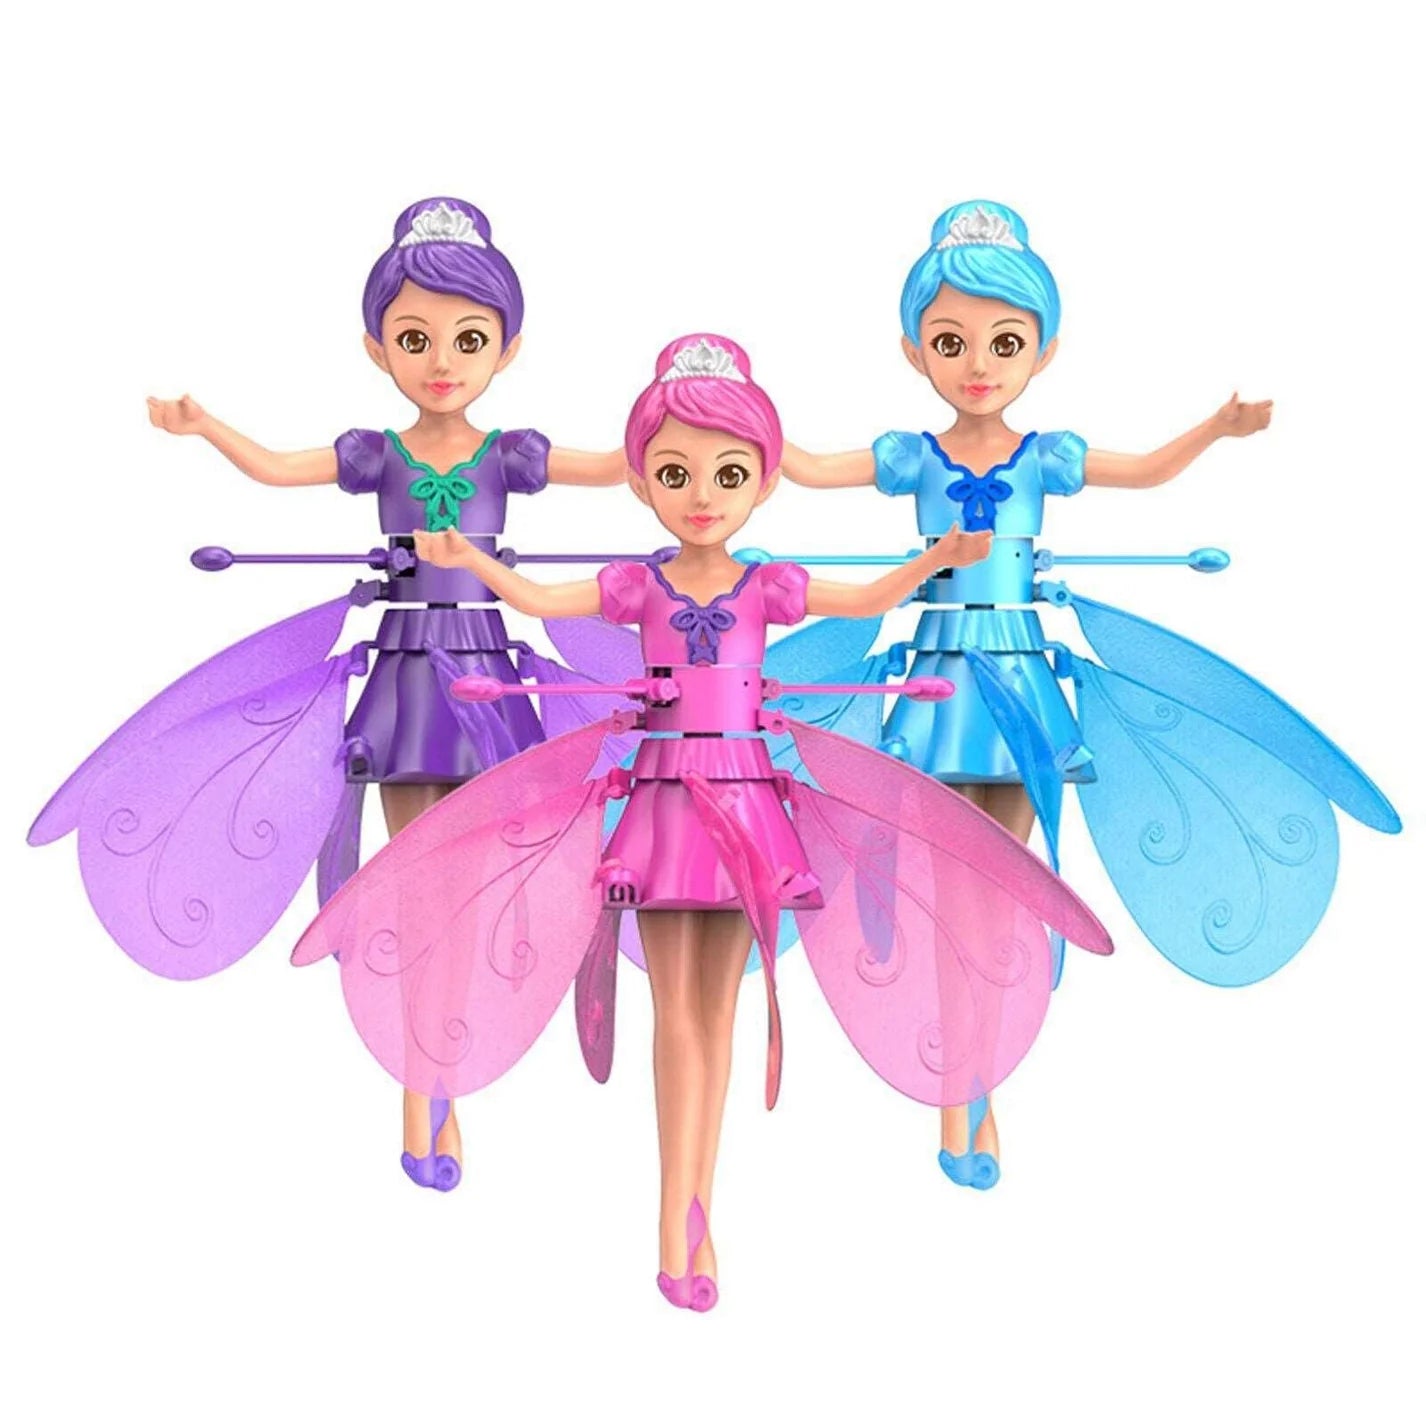 Flying Doll for Girls /Boys